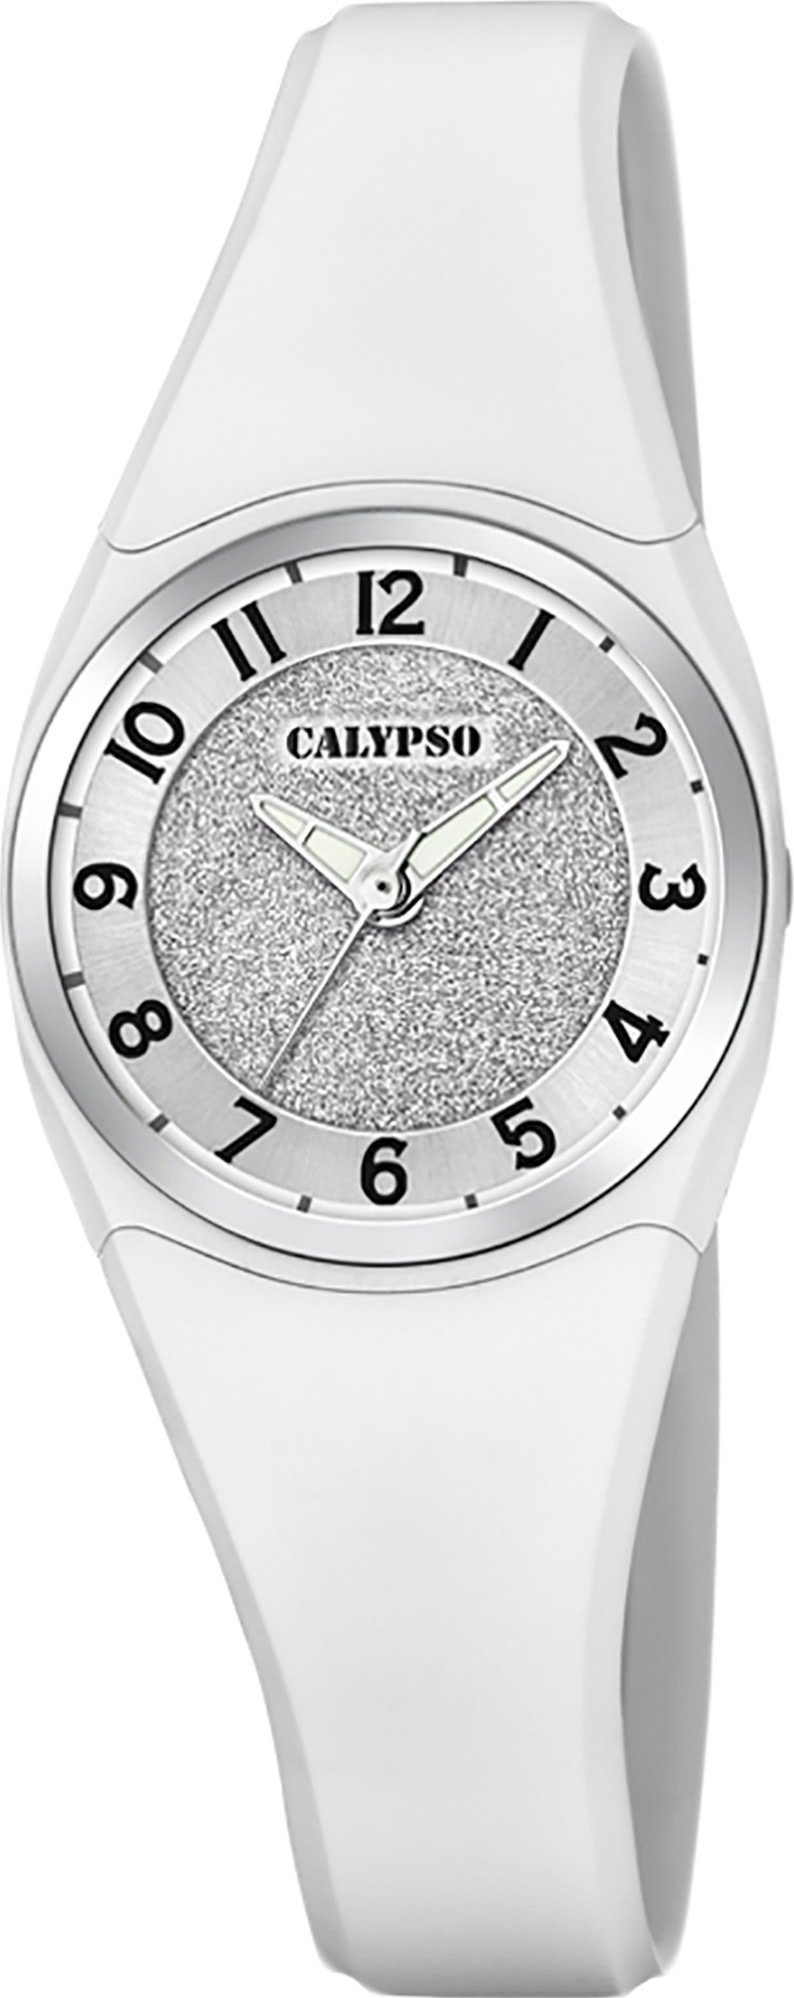 CALYPSO WATCHES Quarzuhr Calypso Damen Uhr K5752/1 Kunststoff PU, Damen Armbanduhr rund, Kunststoff, PUarmband weiß, Fashion